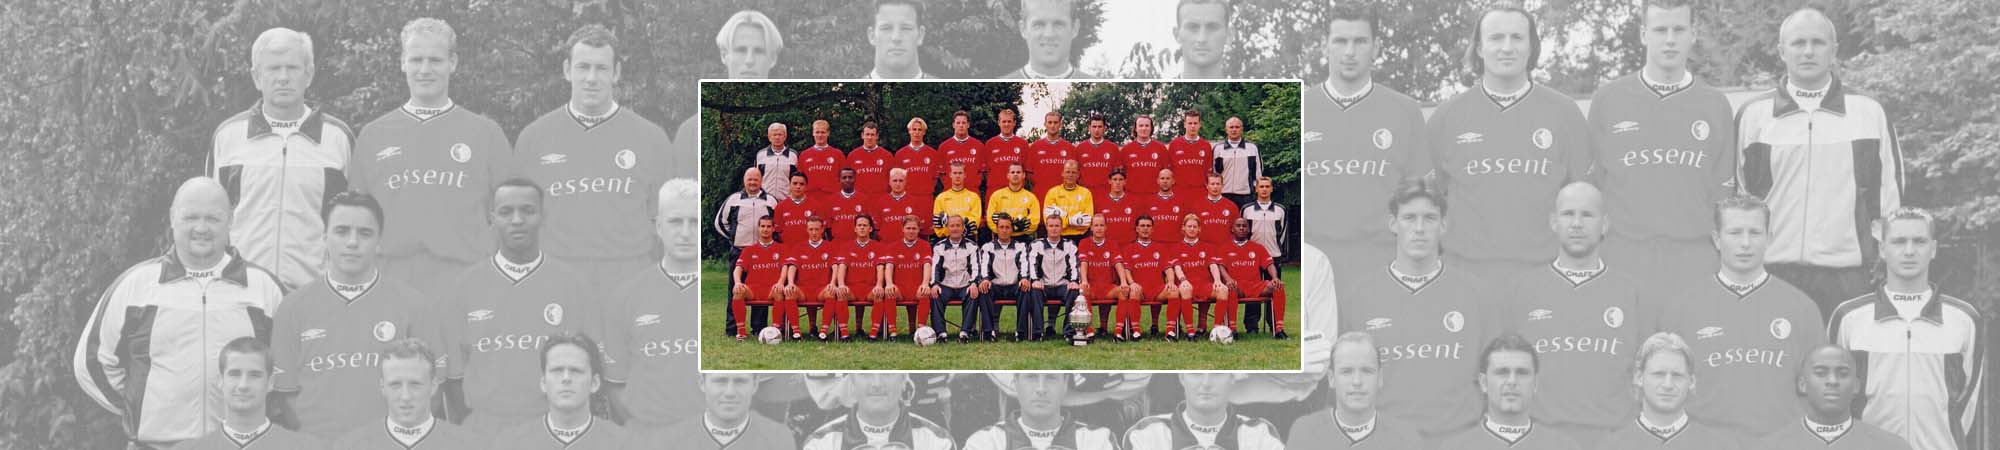 FC Twente seizoen 2001/2002